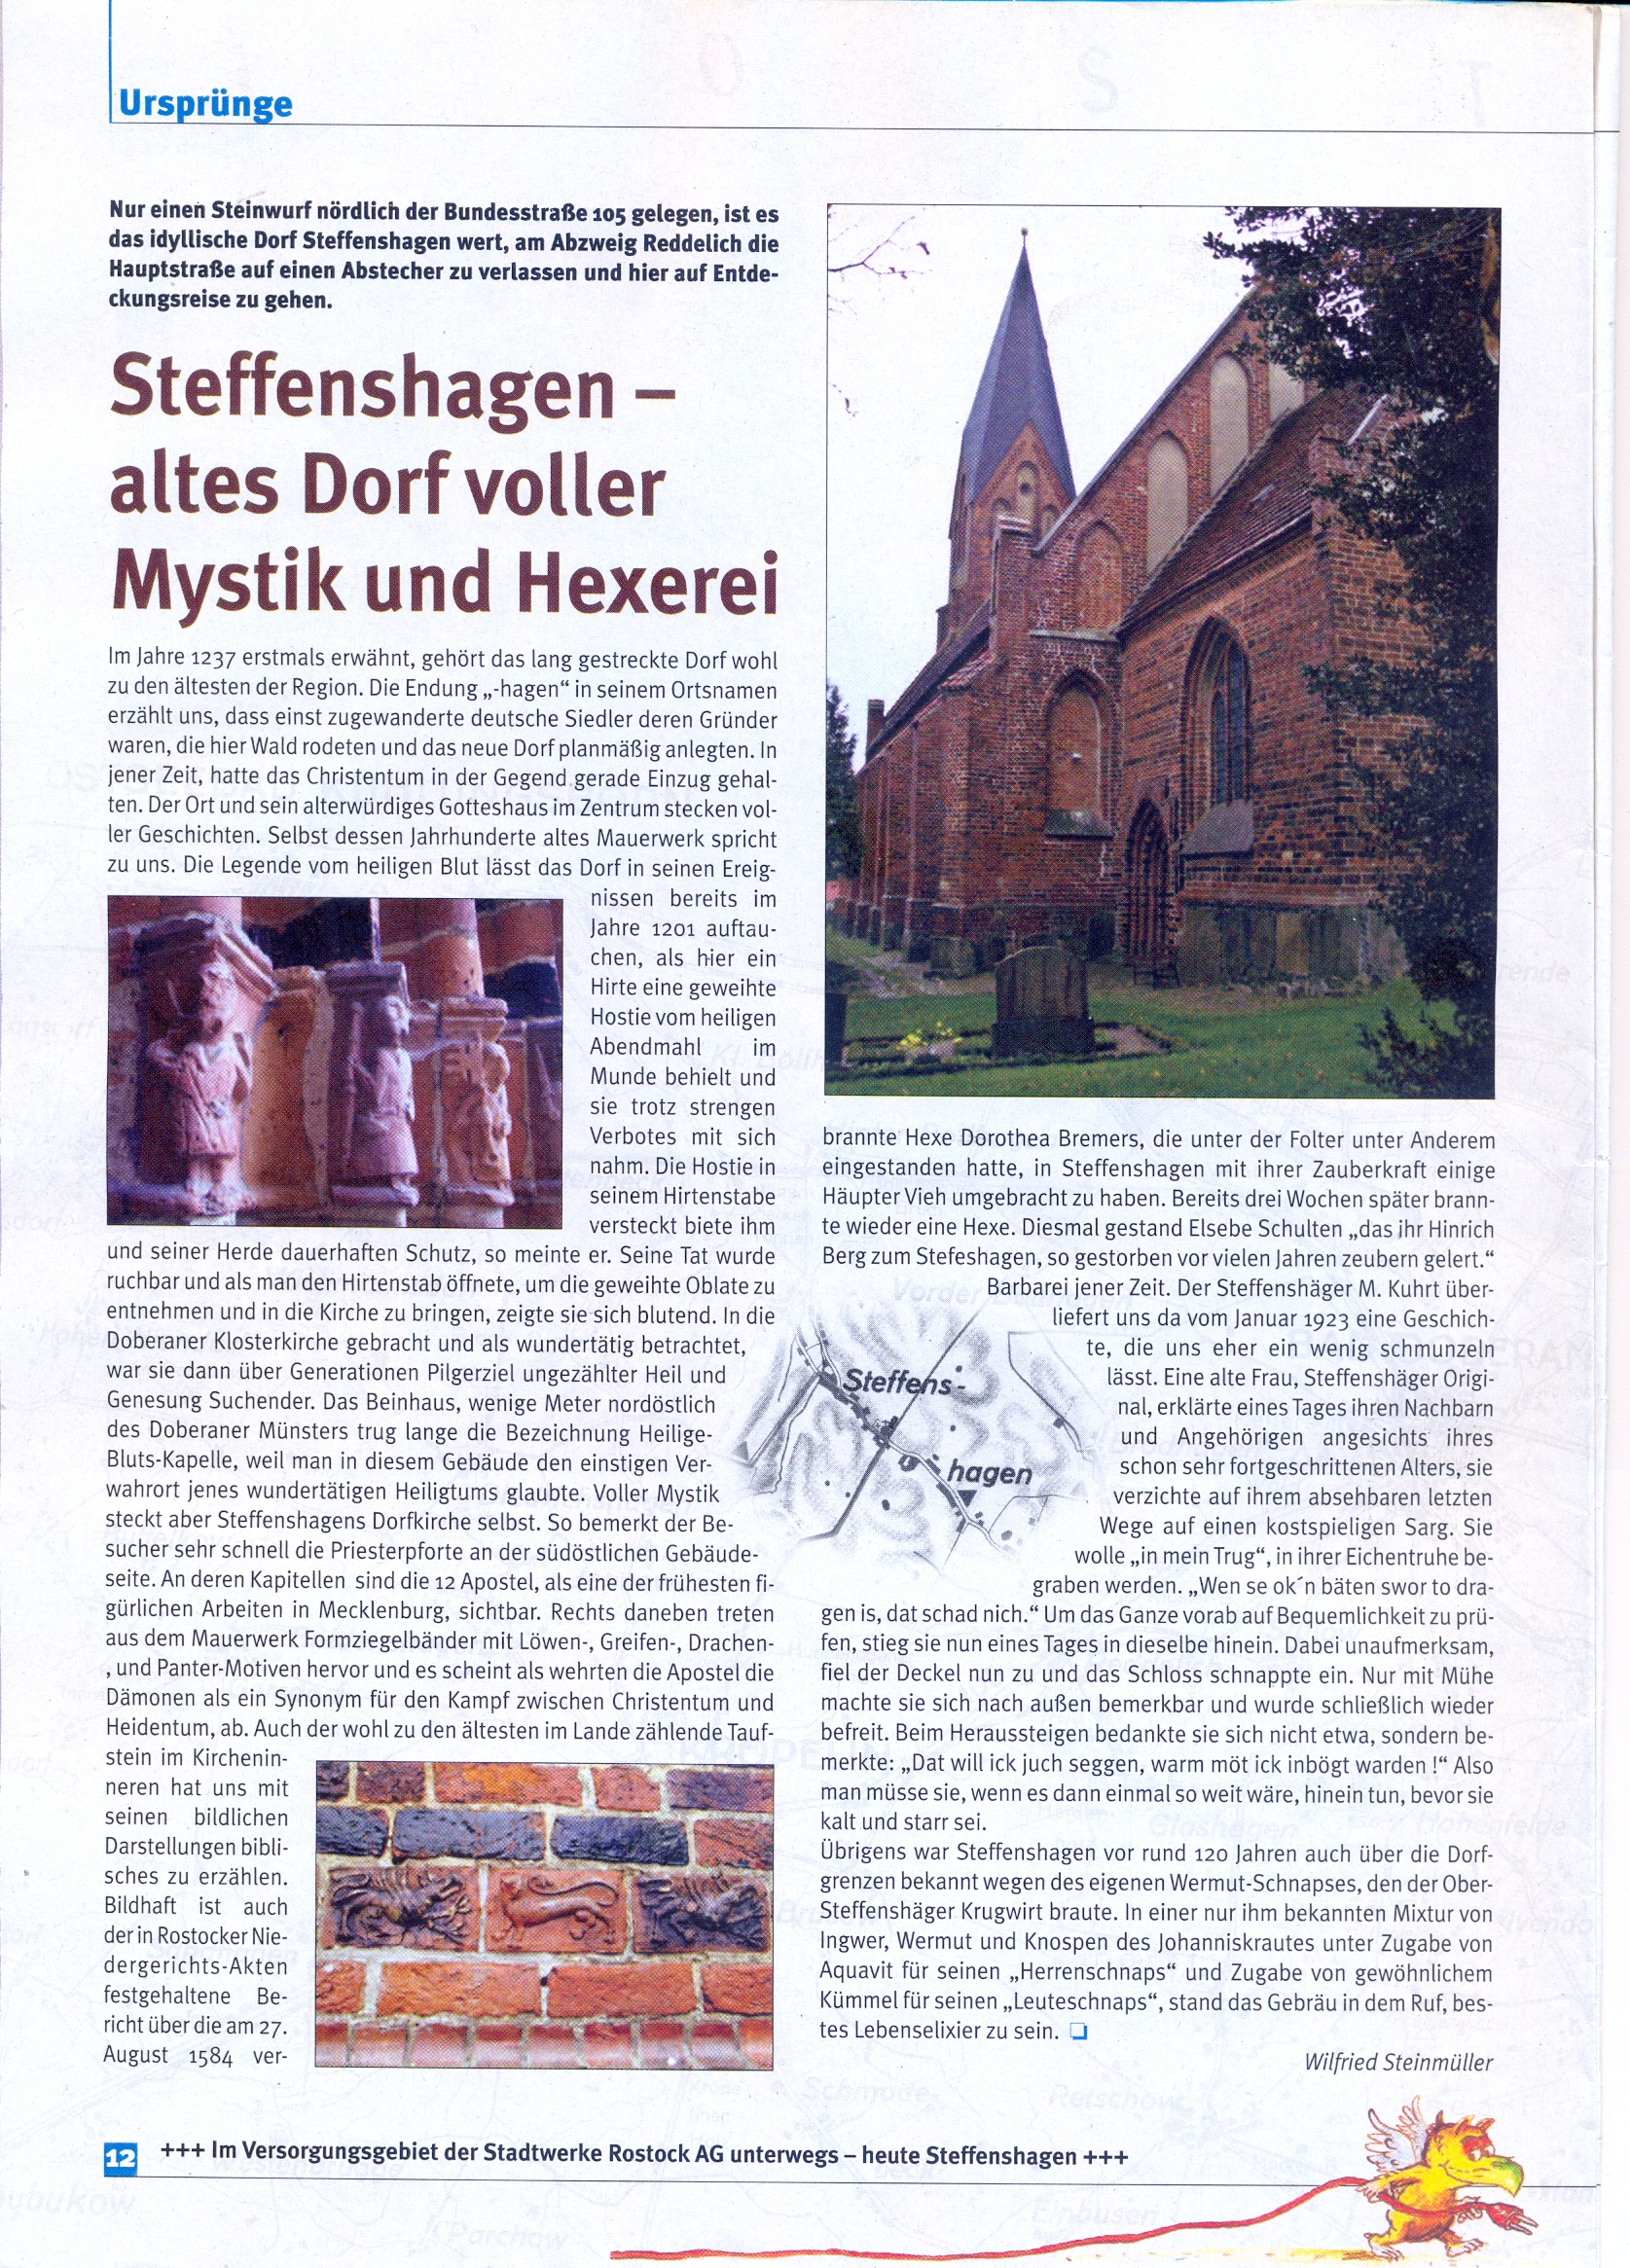 "Steffenshagen- altes Dorf voller Mystik und Hexerei" Inböter Dezember 2007